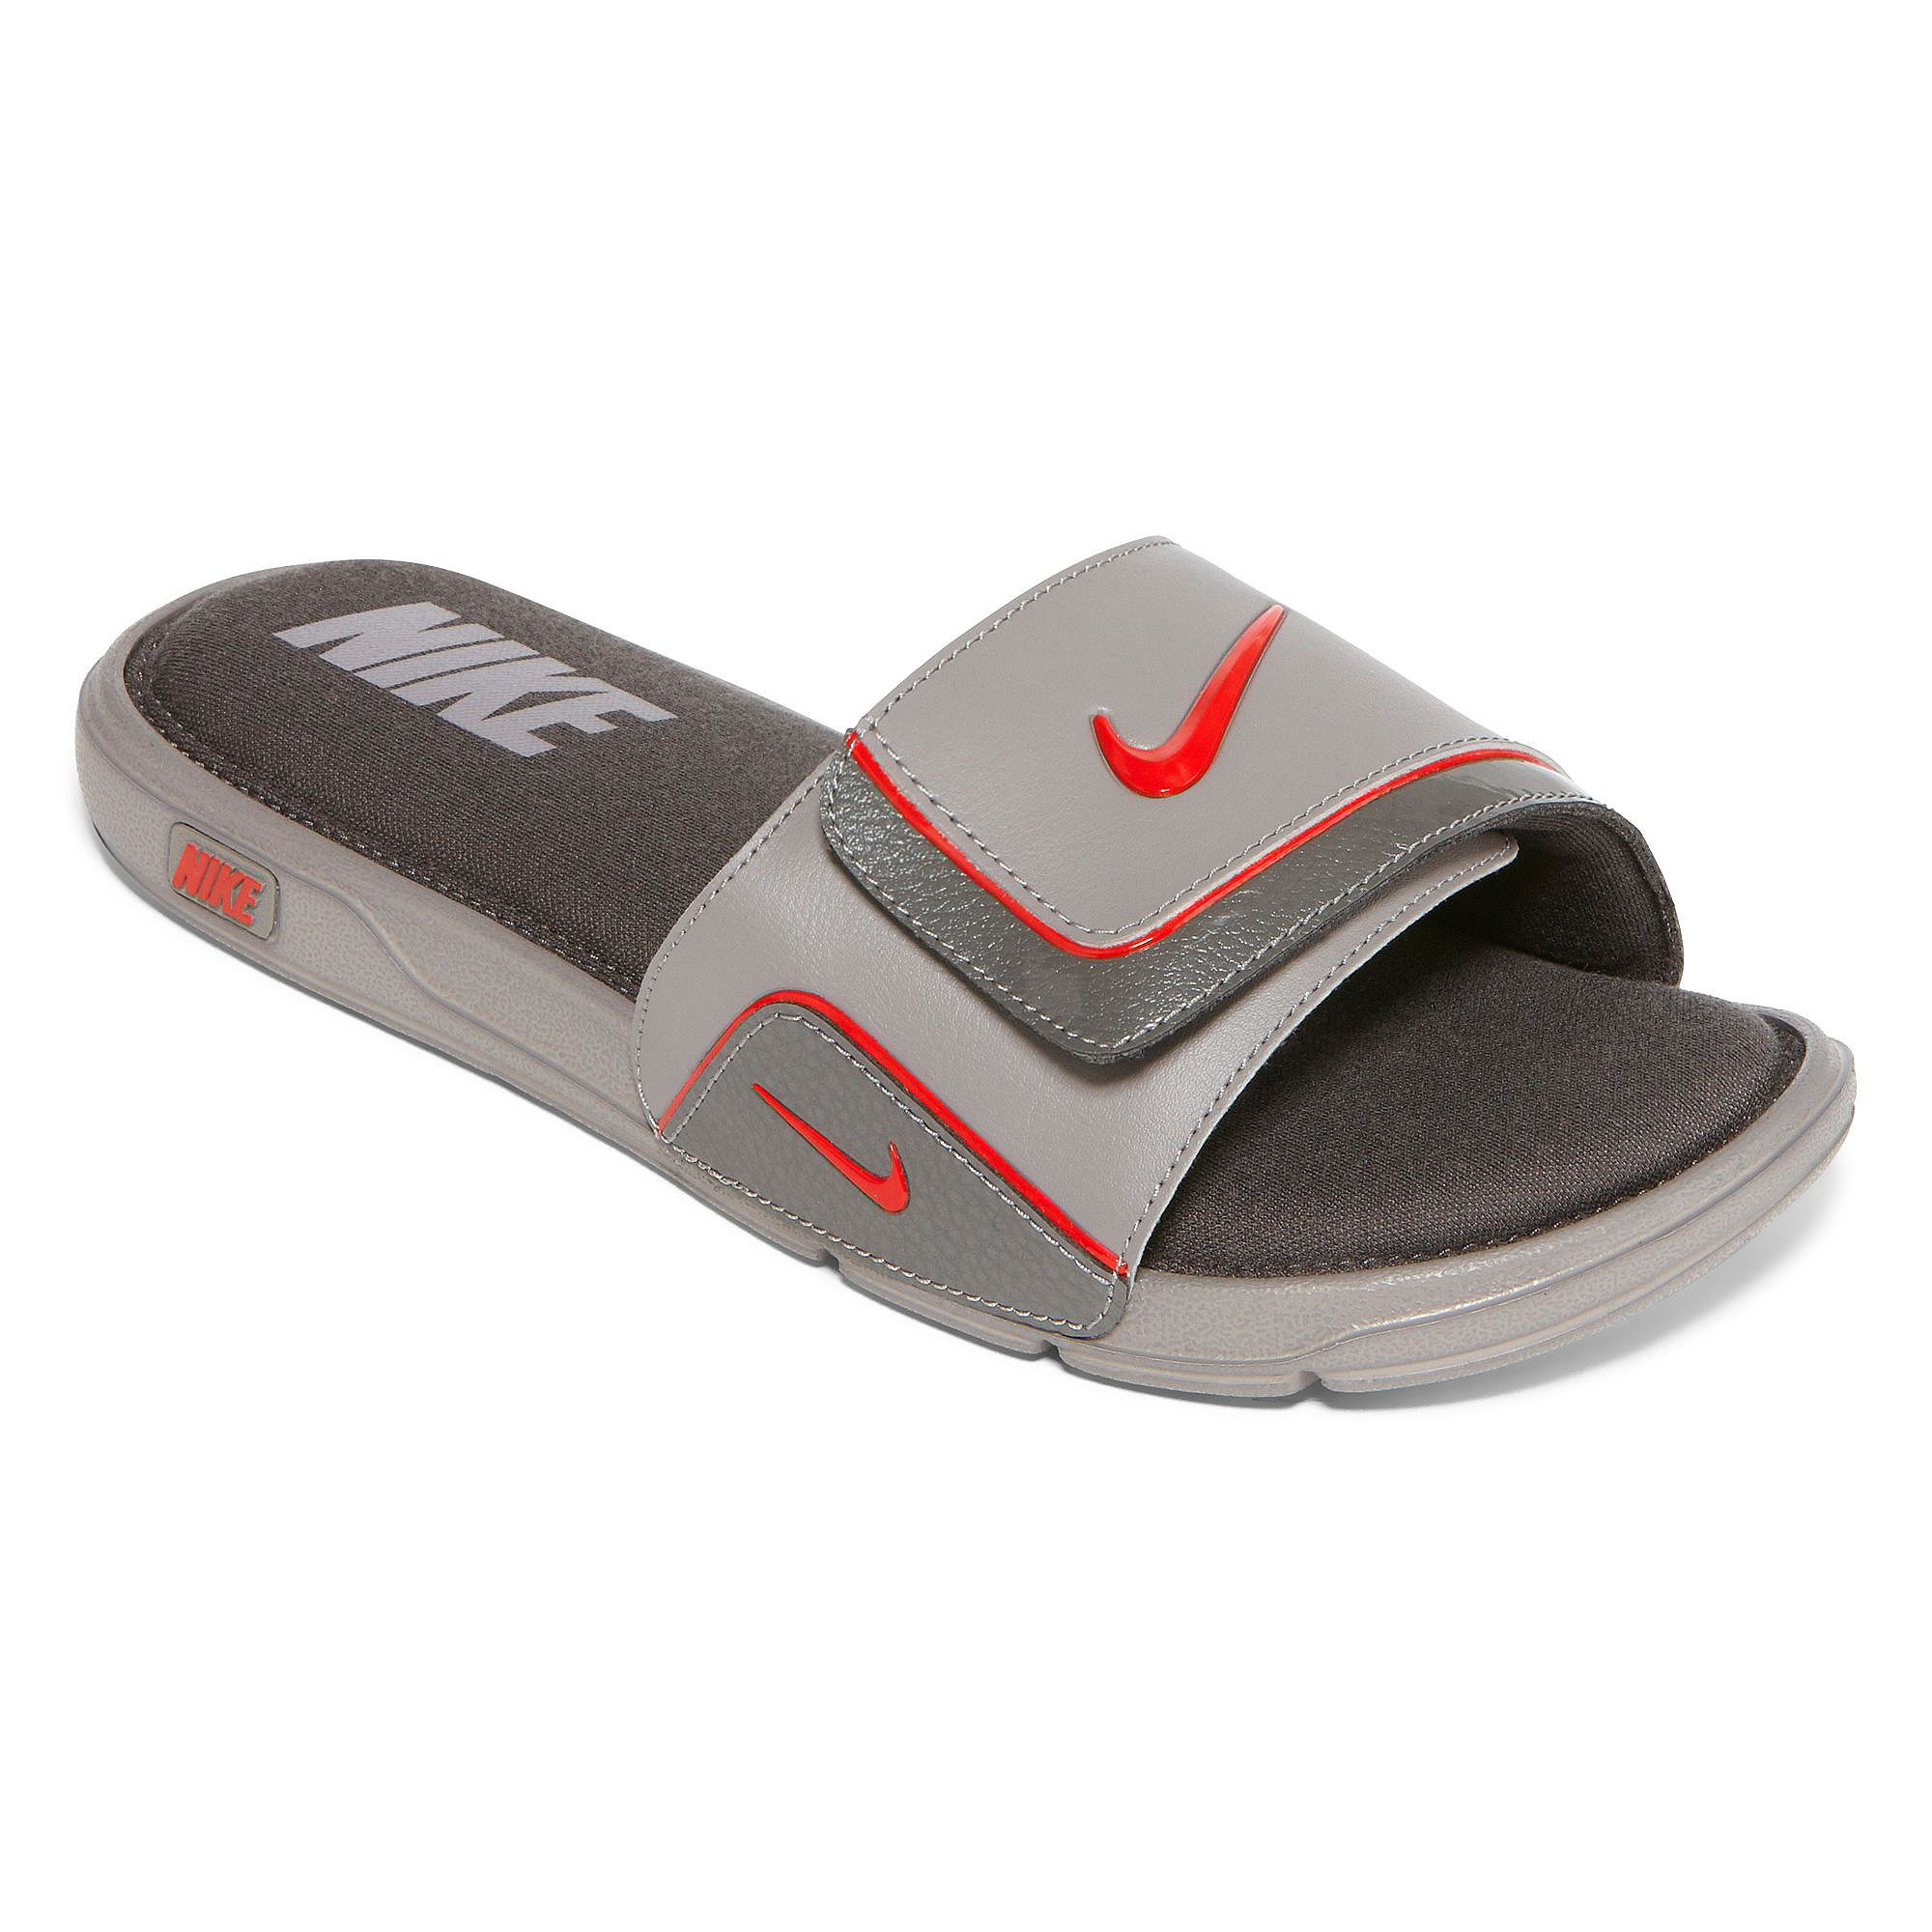 UPC 886736514574 product image for Nike Comfort Slide 2 Mens Sandals | upcitemdb.com